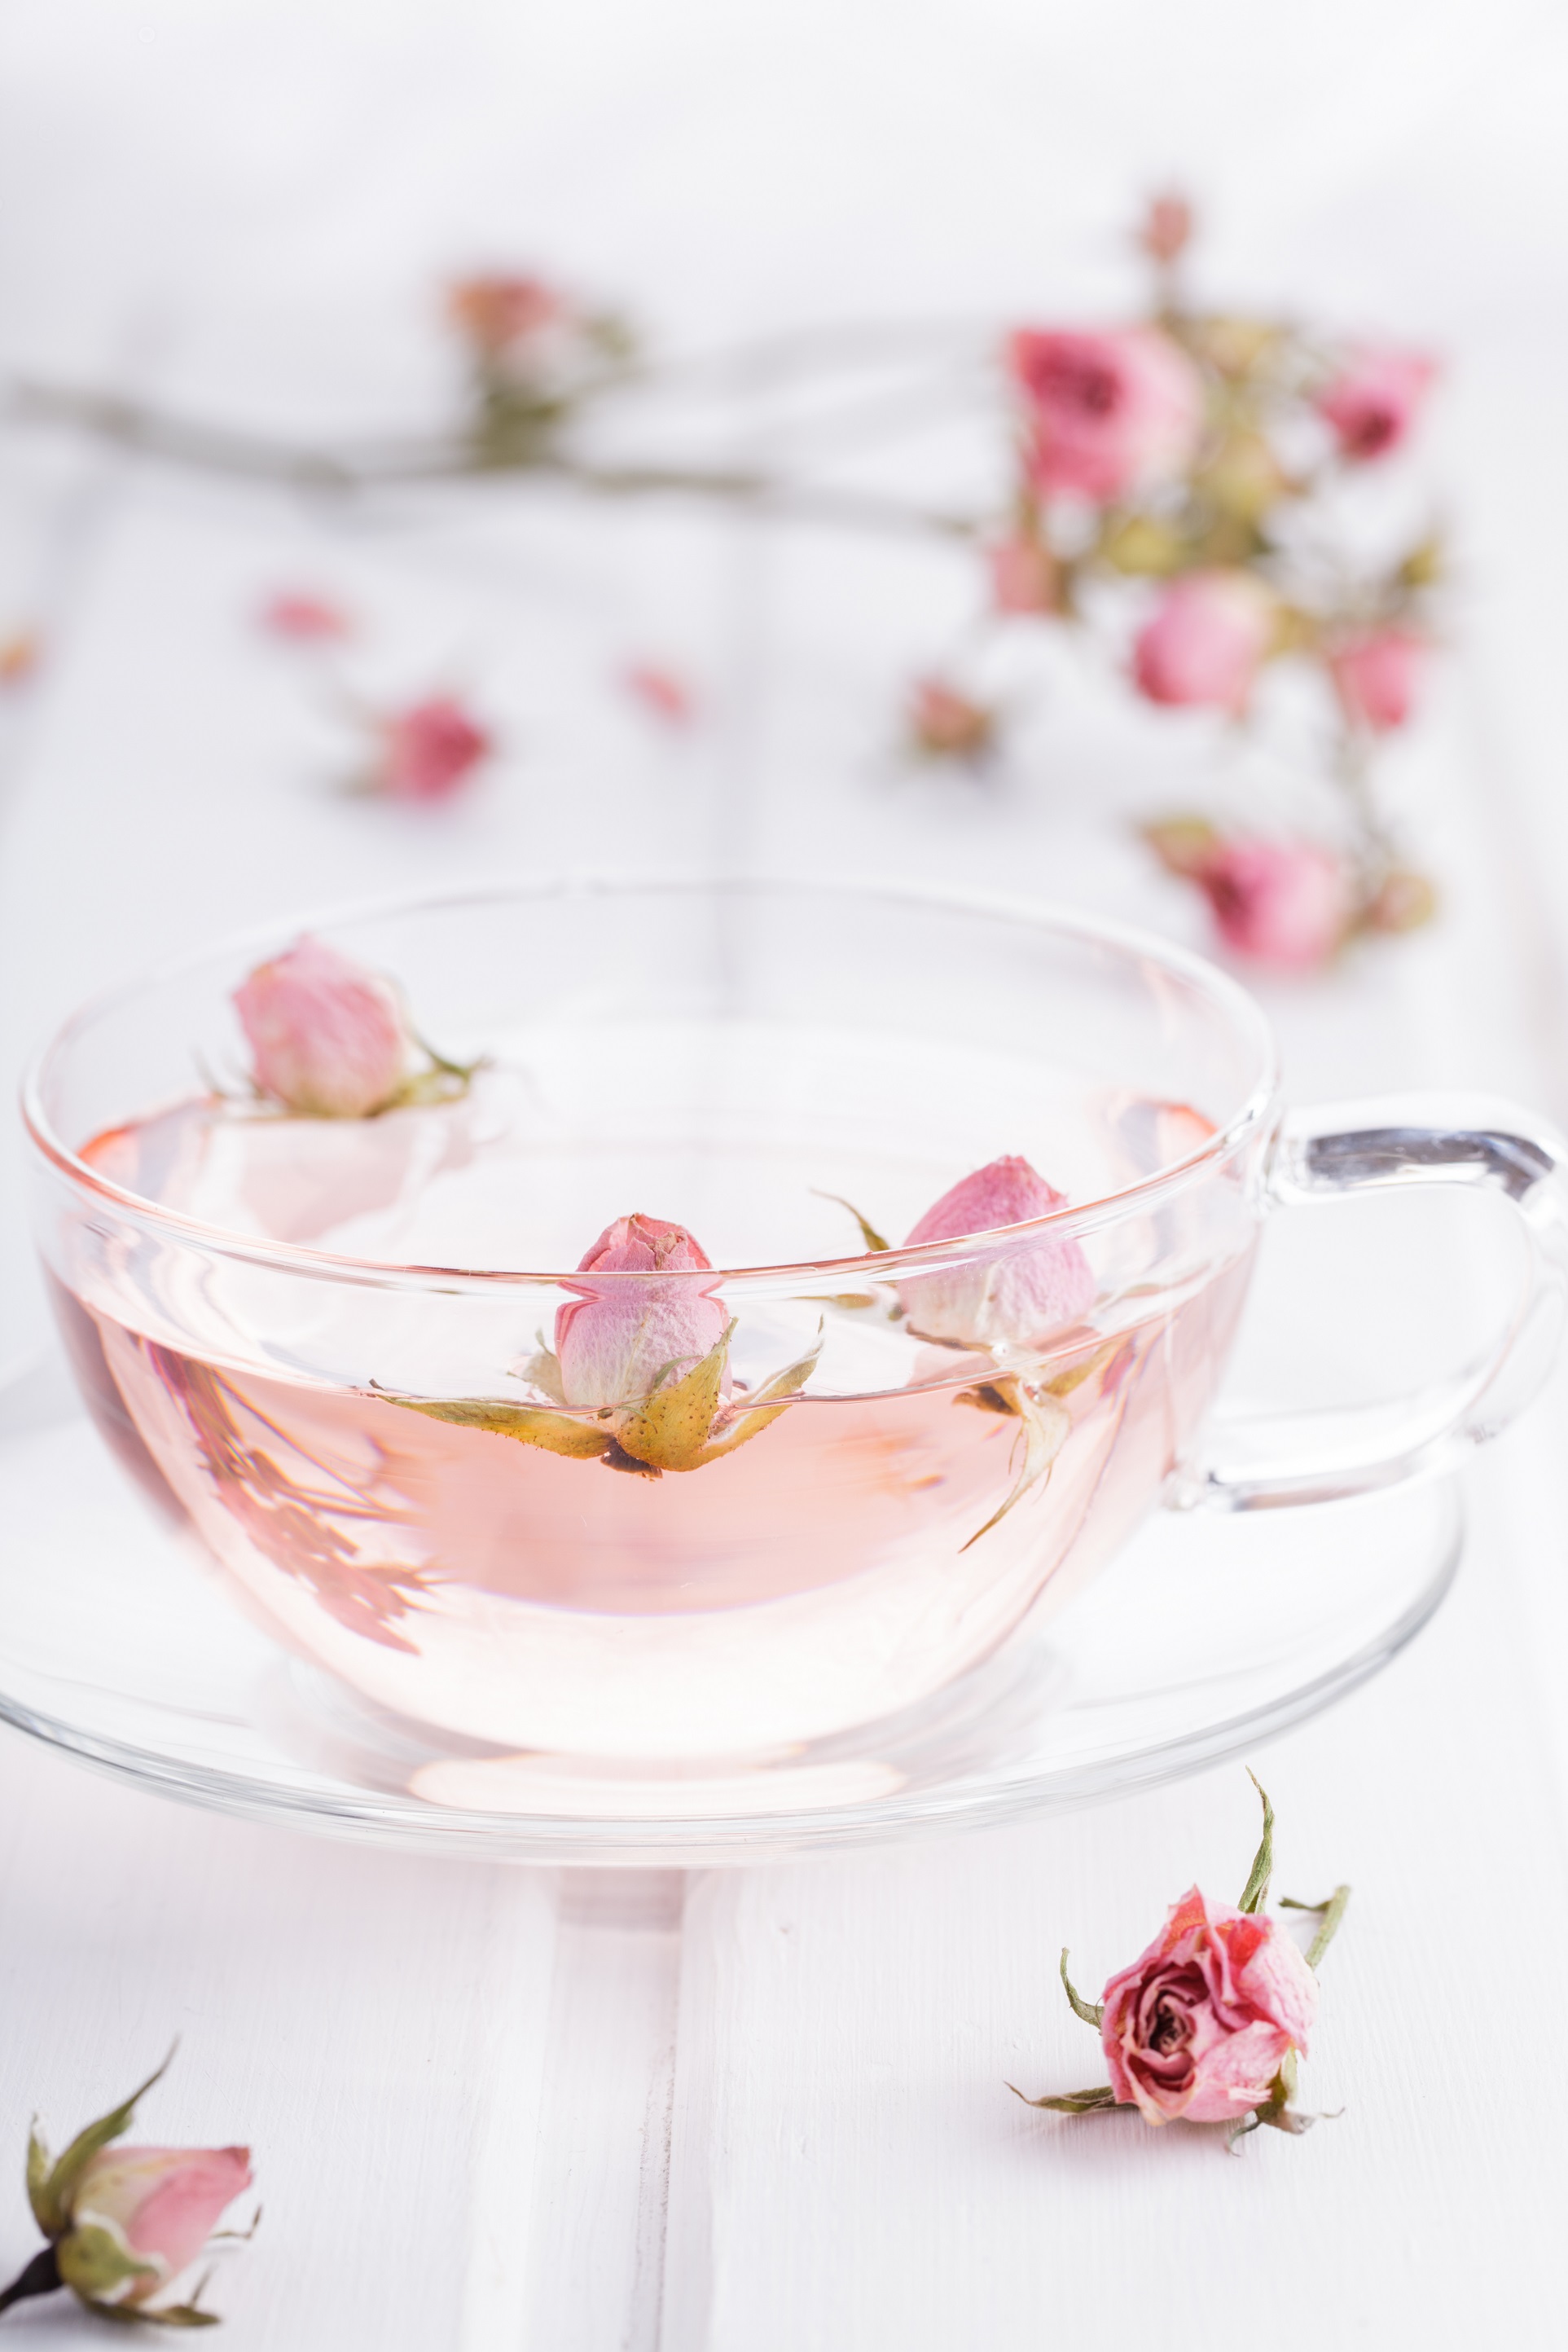 Herbata różana: smaczna, zdrowa, dla każdego